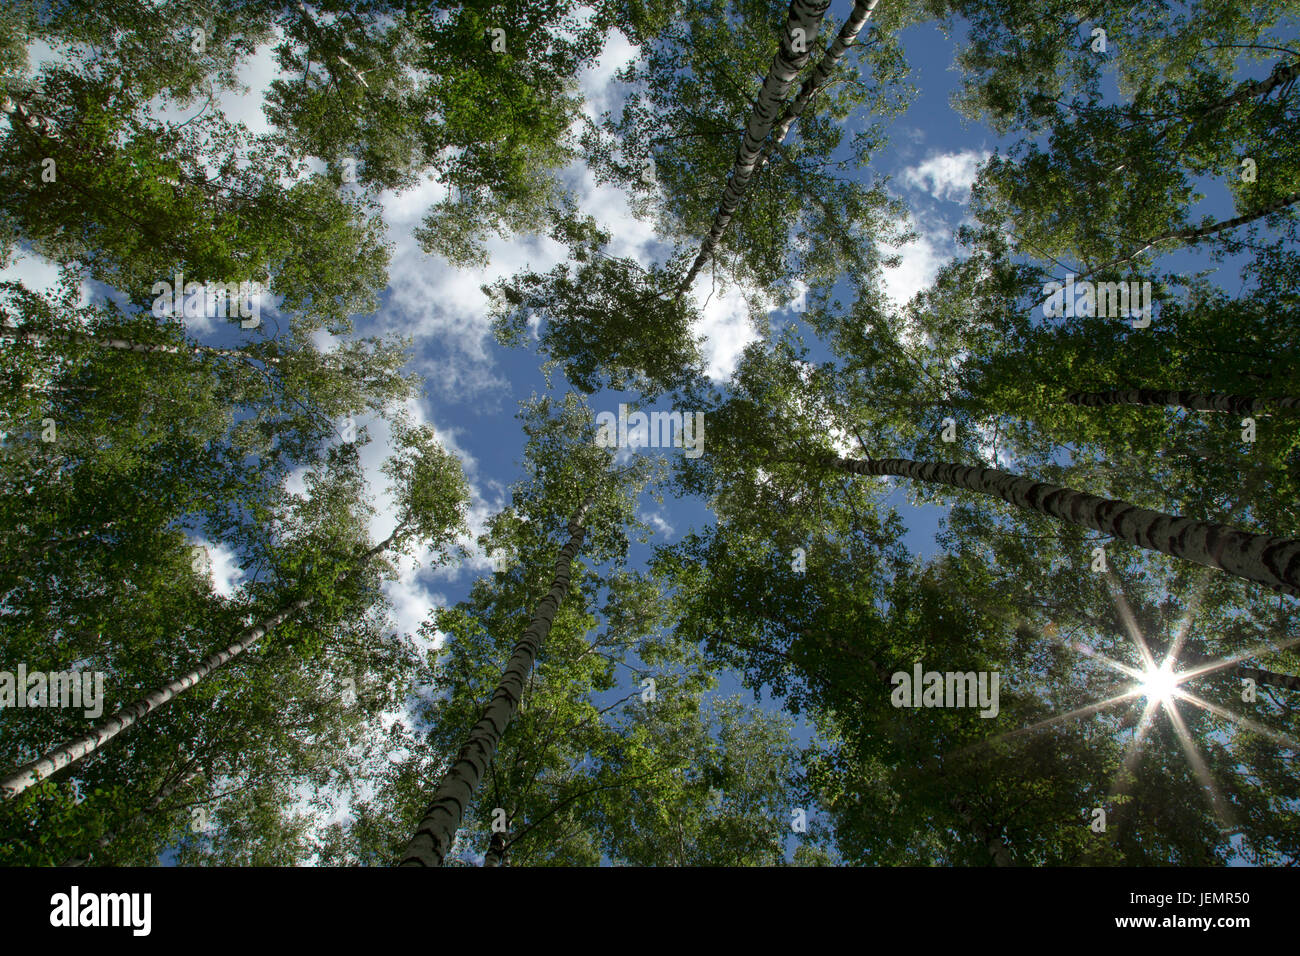 Sterne-geformte Sonnenstrahlen durch die grünen Blätter der hohen Bäume im Sommer Wald Stockfoto